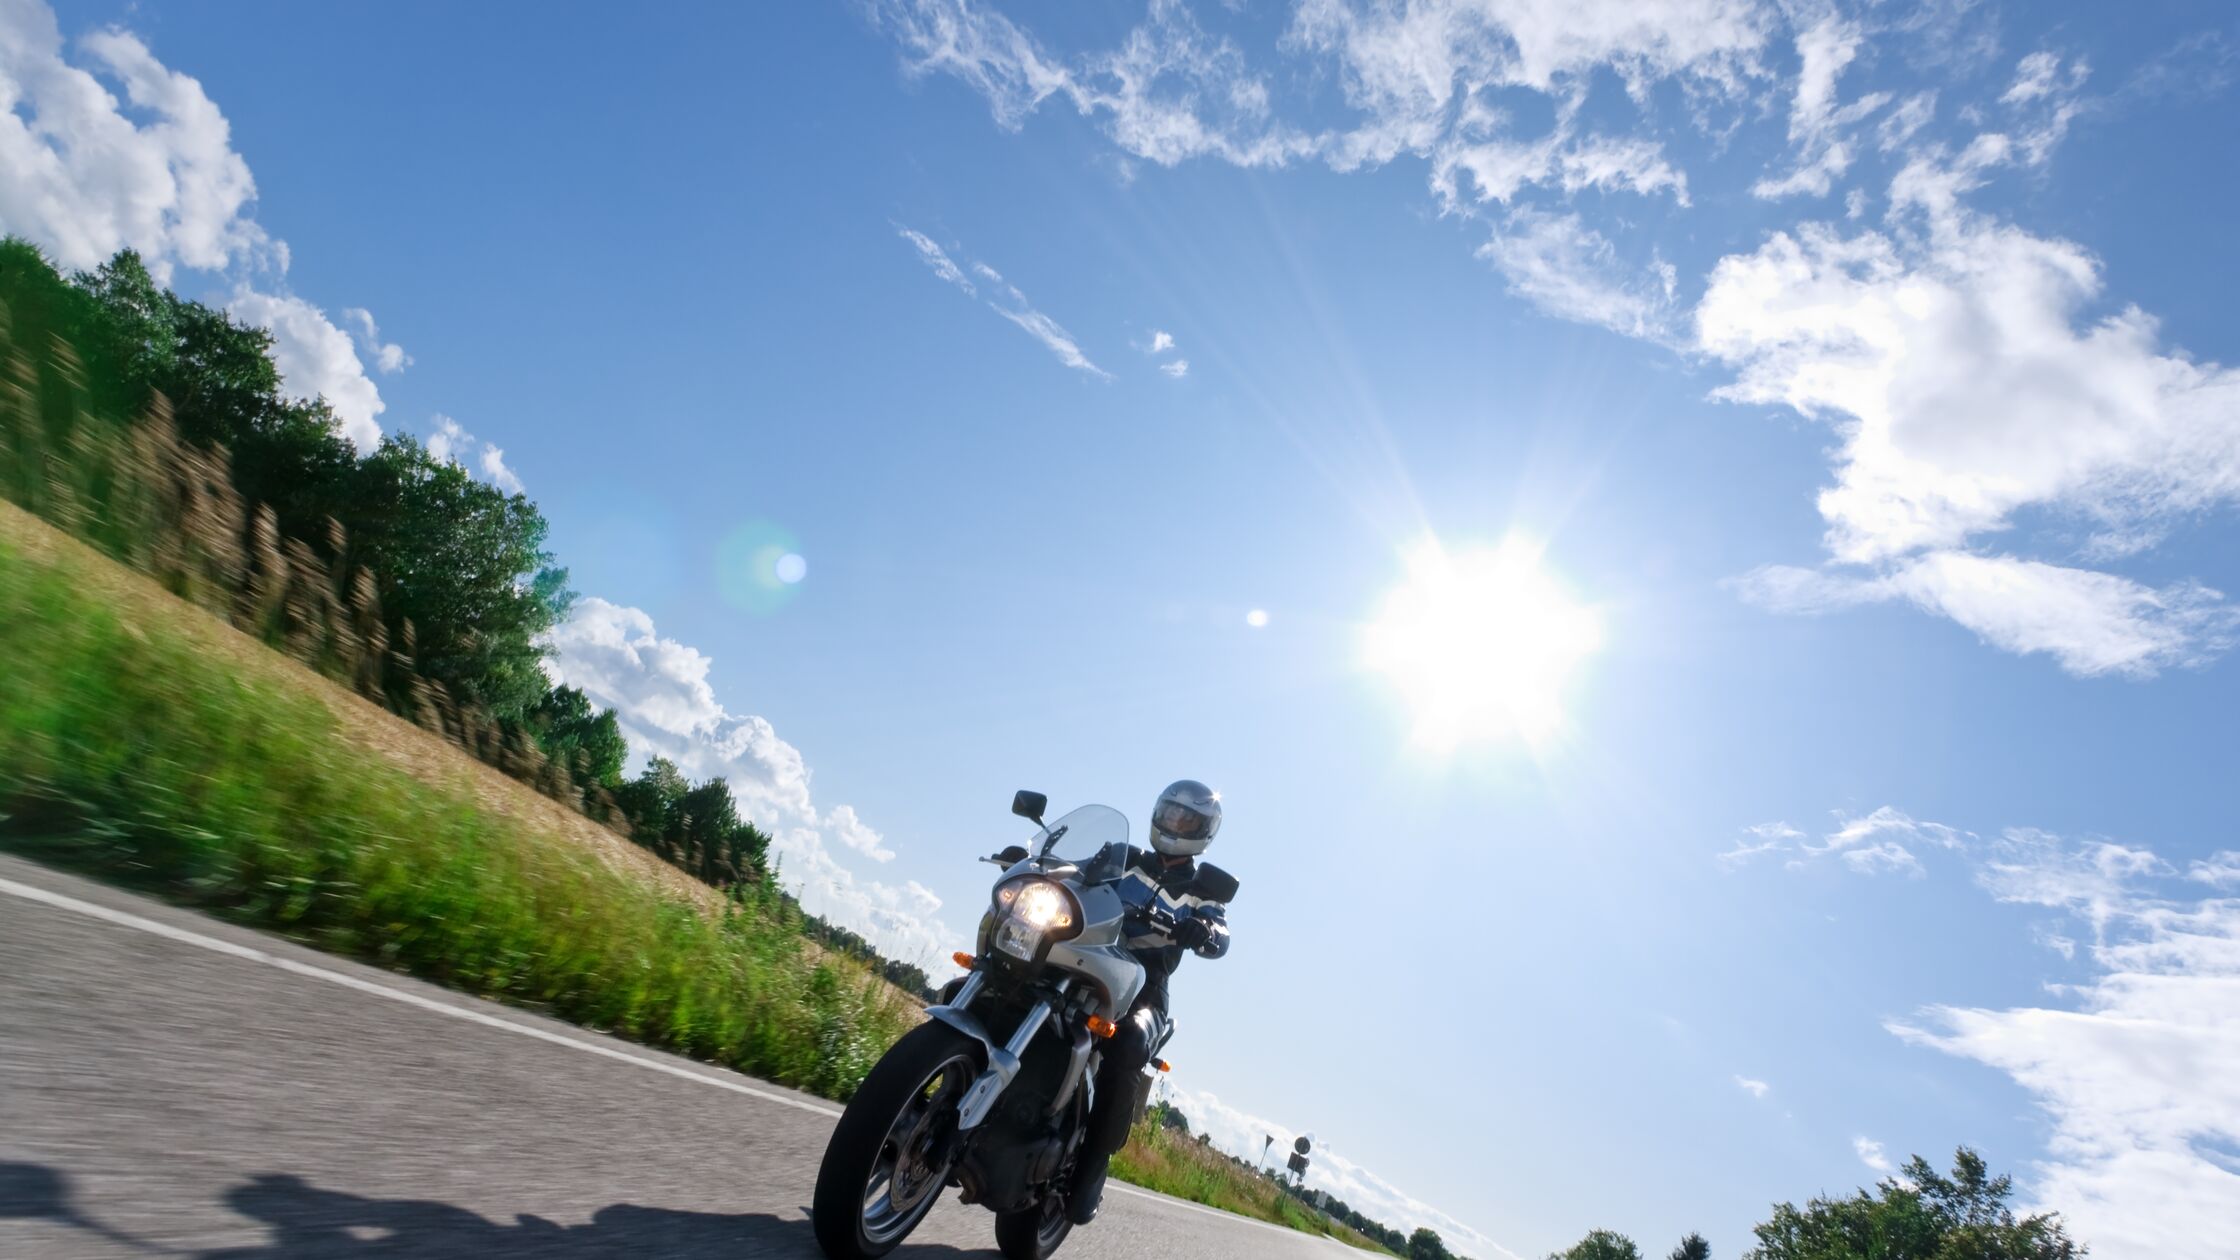 Motorrad transportieren: Sicher Umziehen mit dem PS-starken Zweirad